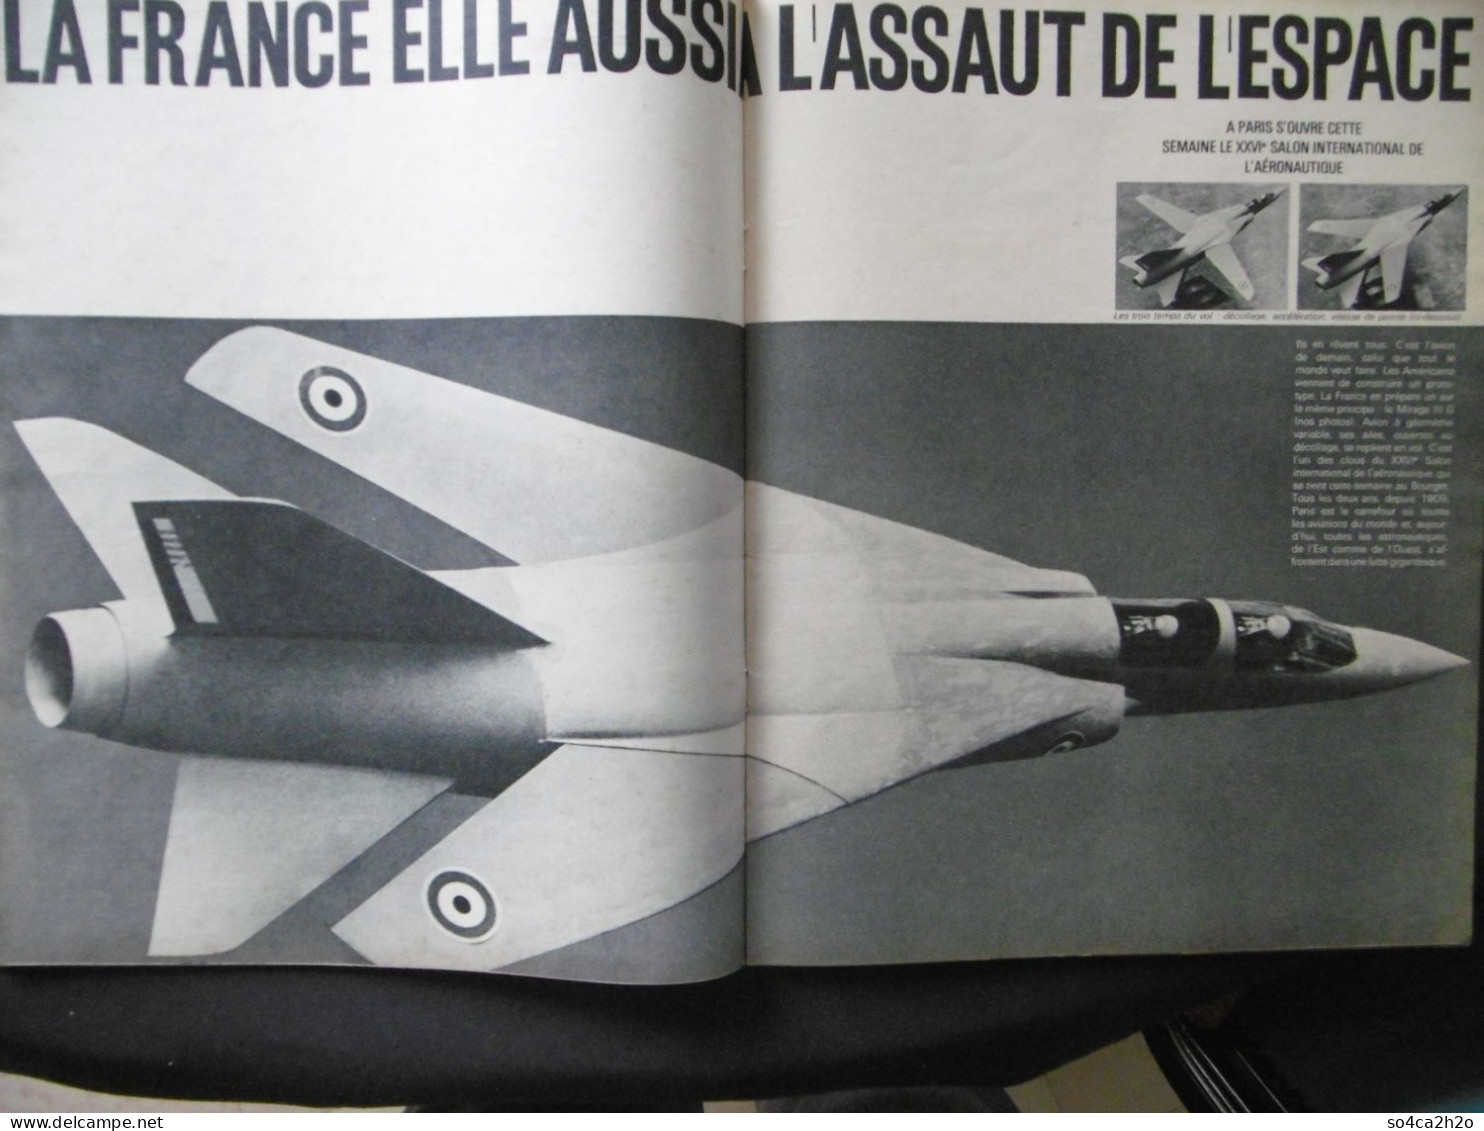 Paris Match N°844 12 Juin 1965 Les Jumeaux De L'espace; Jacques Anquetil - Allgemeine Literatur